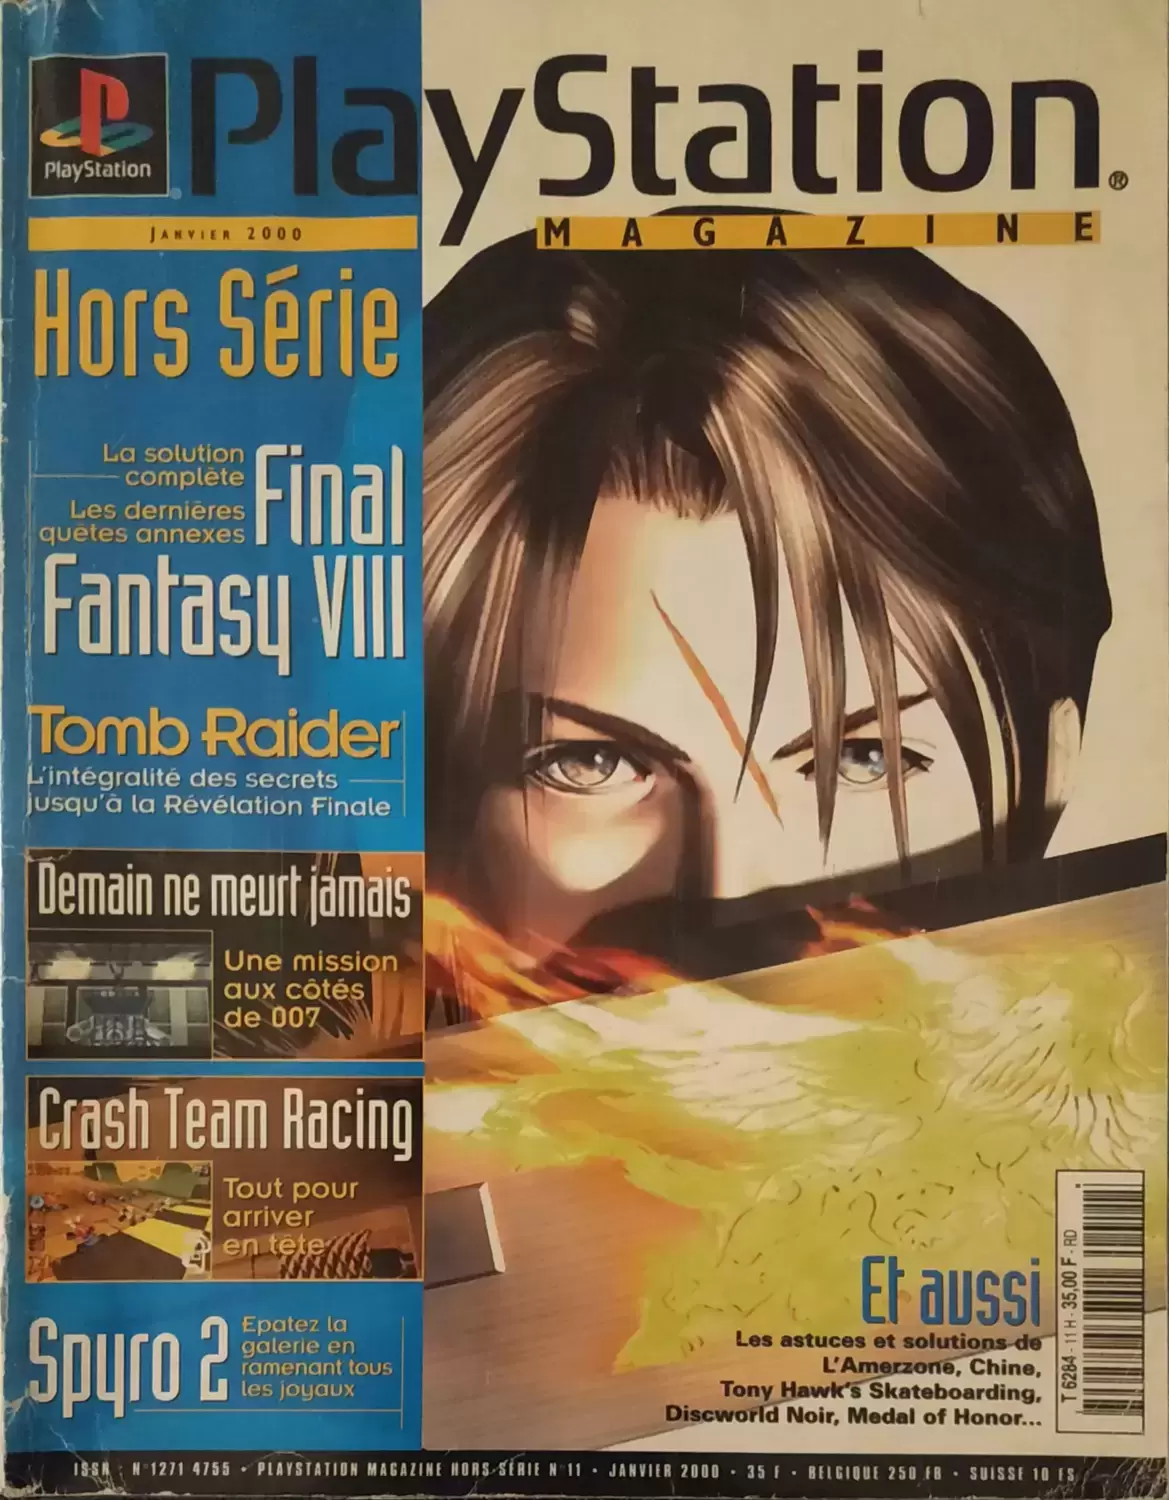 Playstation Magazine - Playstation Magazine Numéro Hors Serie 11